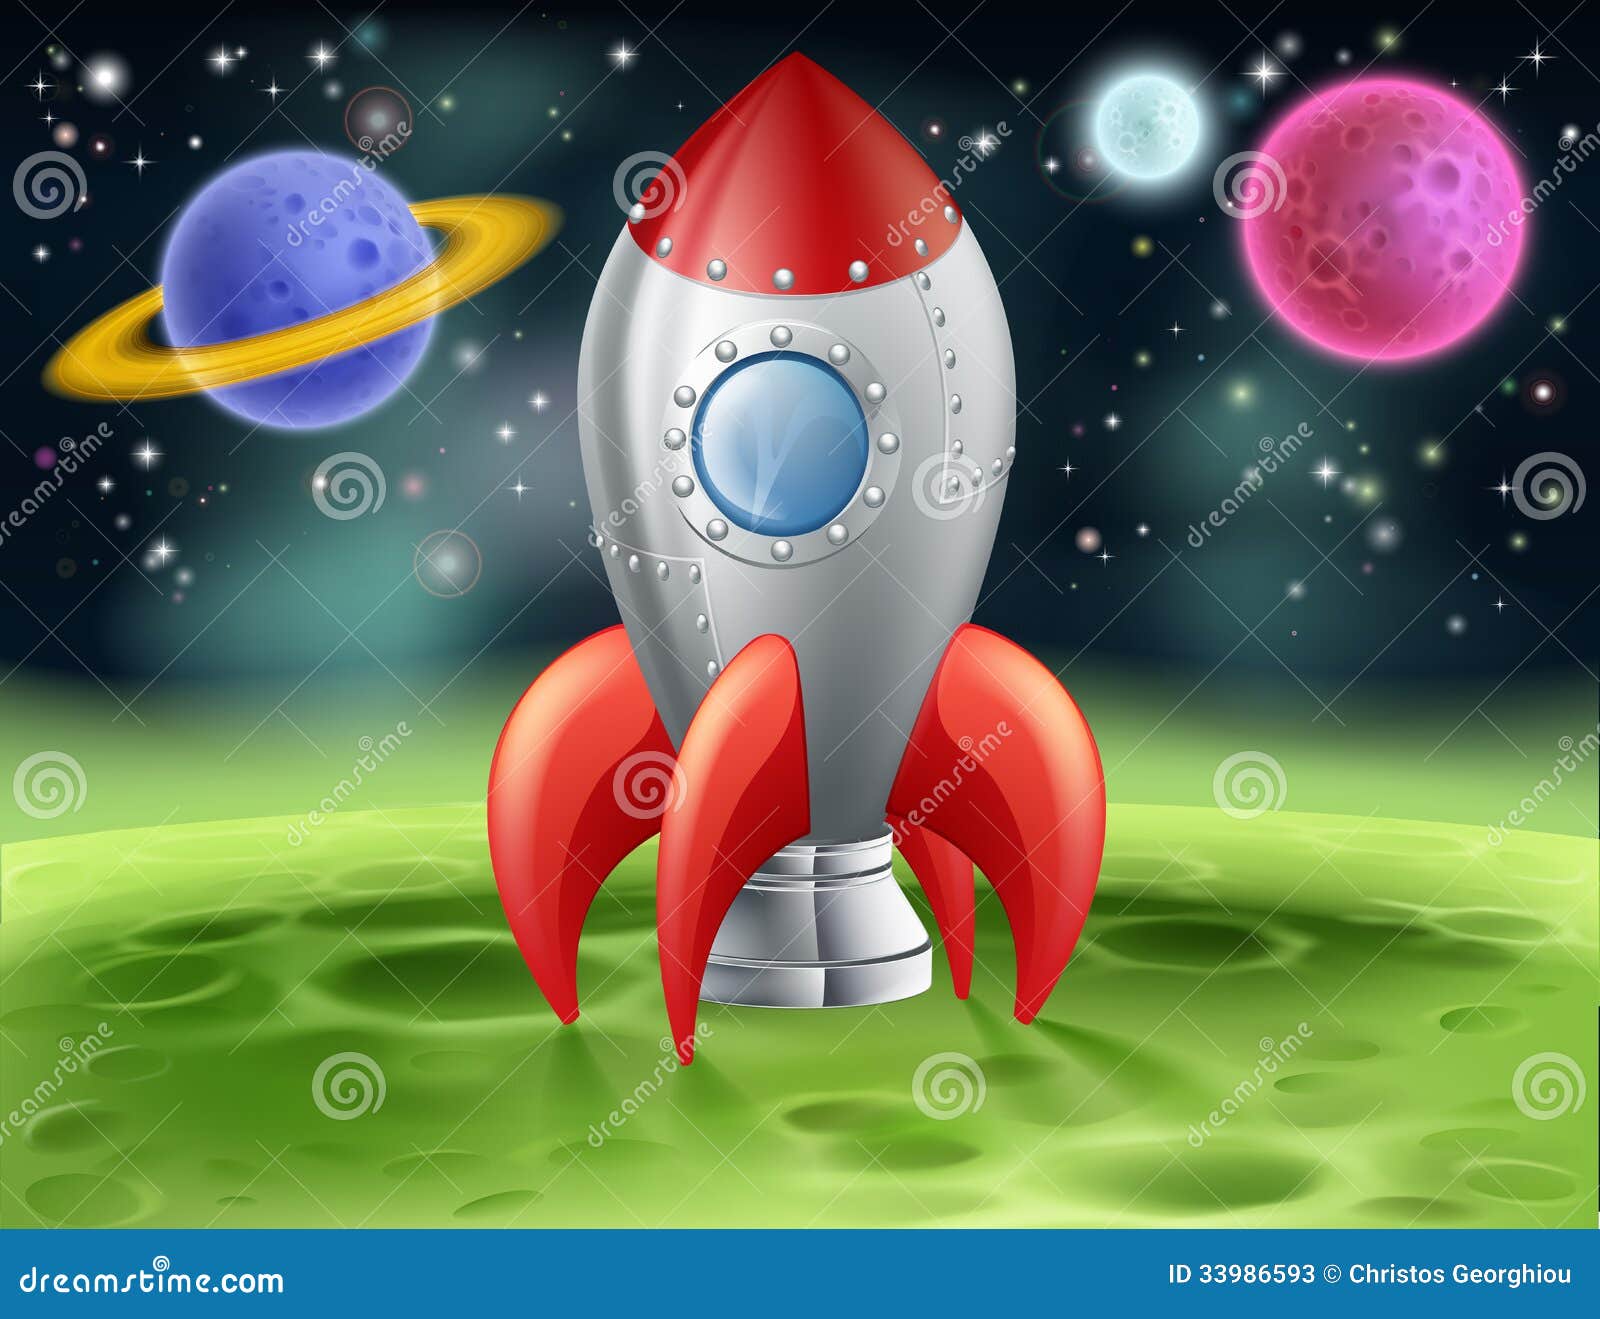 Ракета на луне рисунок. Ракета для детей. Ракета и планеты. Ракета в космосе для детей. Ракета космос планеты для детей.